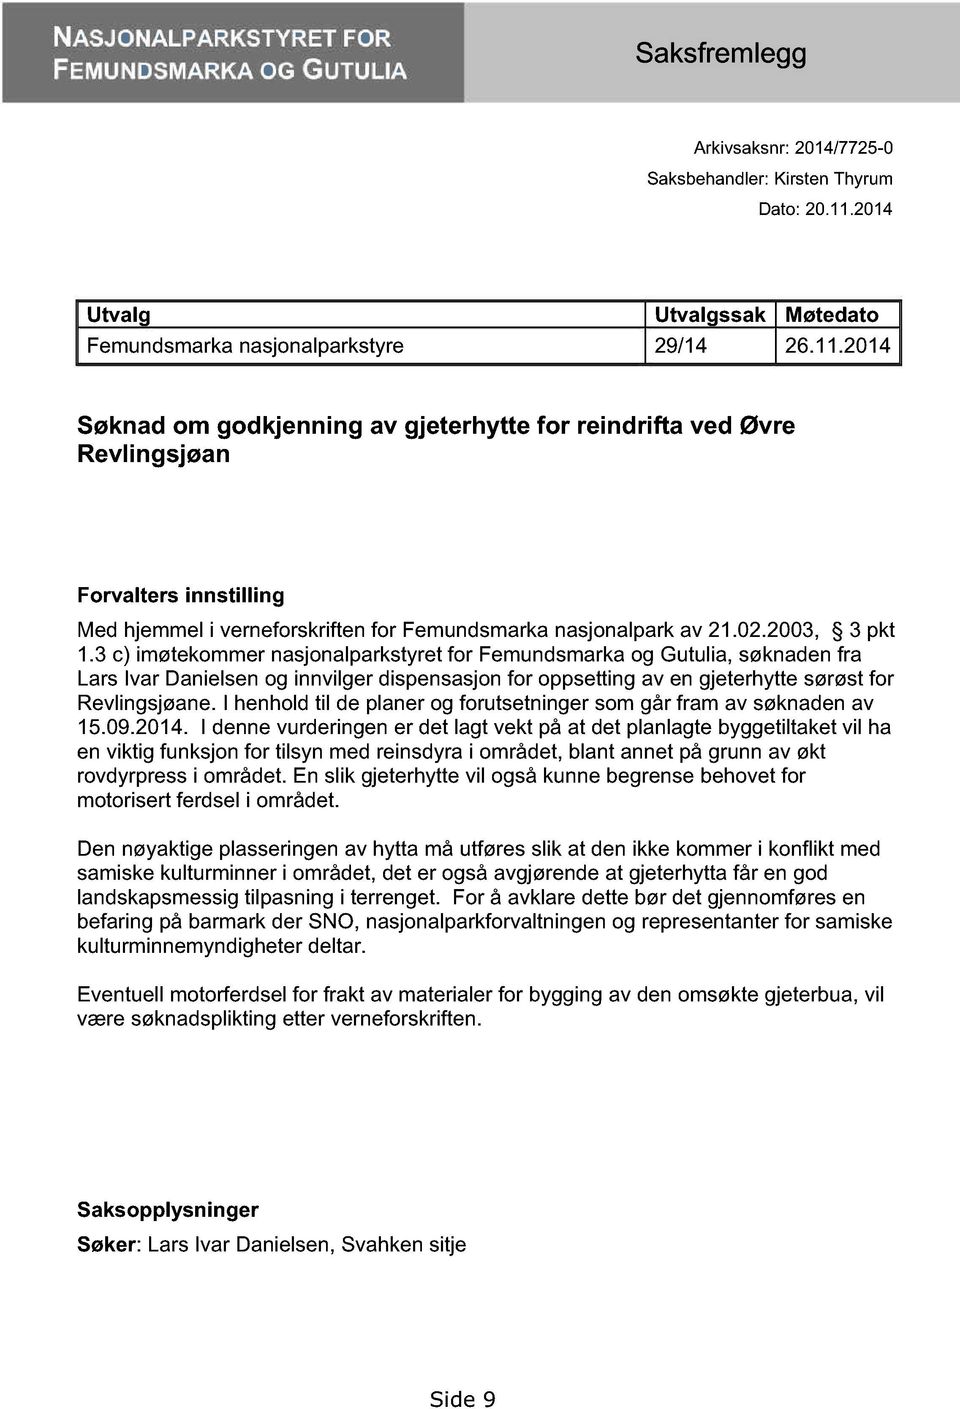 3 c) imøtekommer nasjonalparkstyret for Femundsmarka og Gutulia, søknaden fra Lars Ivar Danielsen og innvilger dispensasjon for oppsetting av en gjeterhytte sørøst for Revlingsjøane.